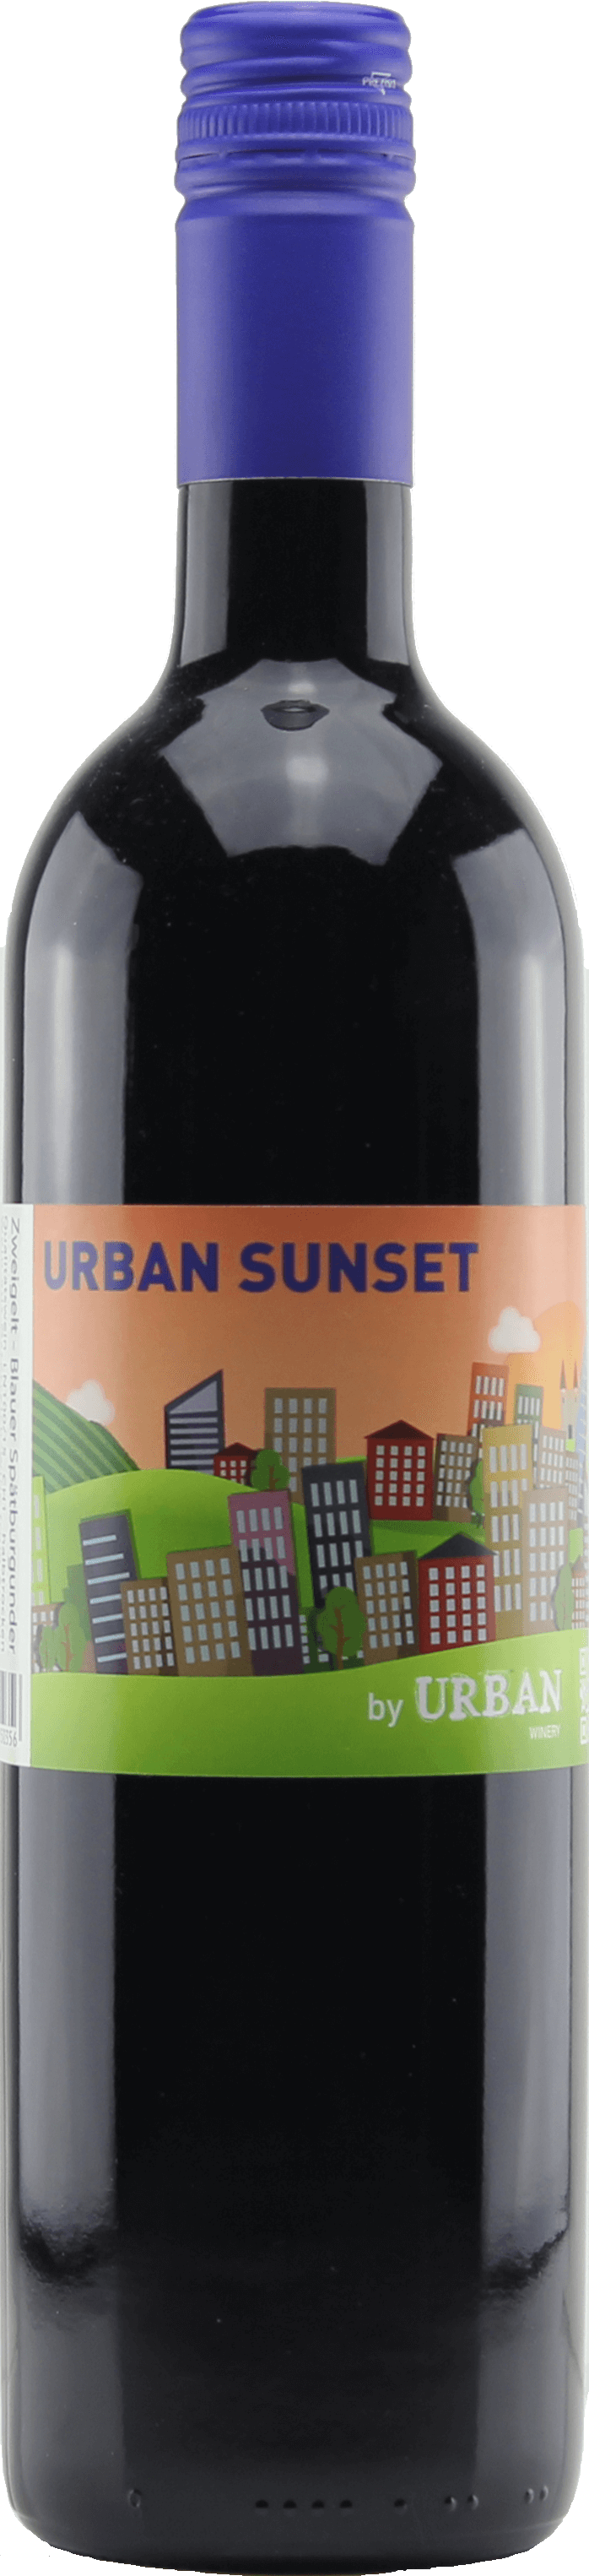 Urban Sunset Portugieser Cuveé Blauer | INOFILOS 2020 Zweigelt